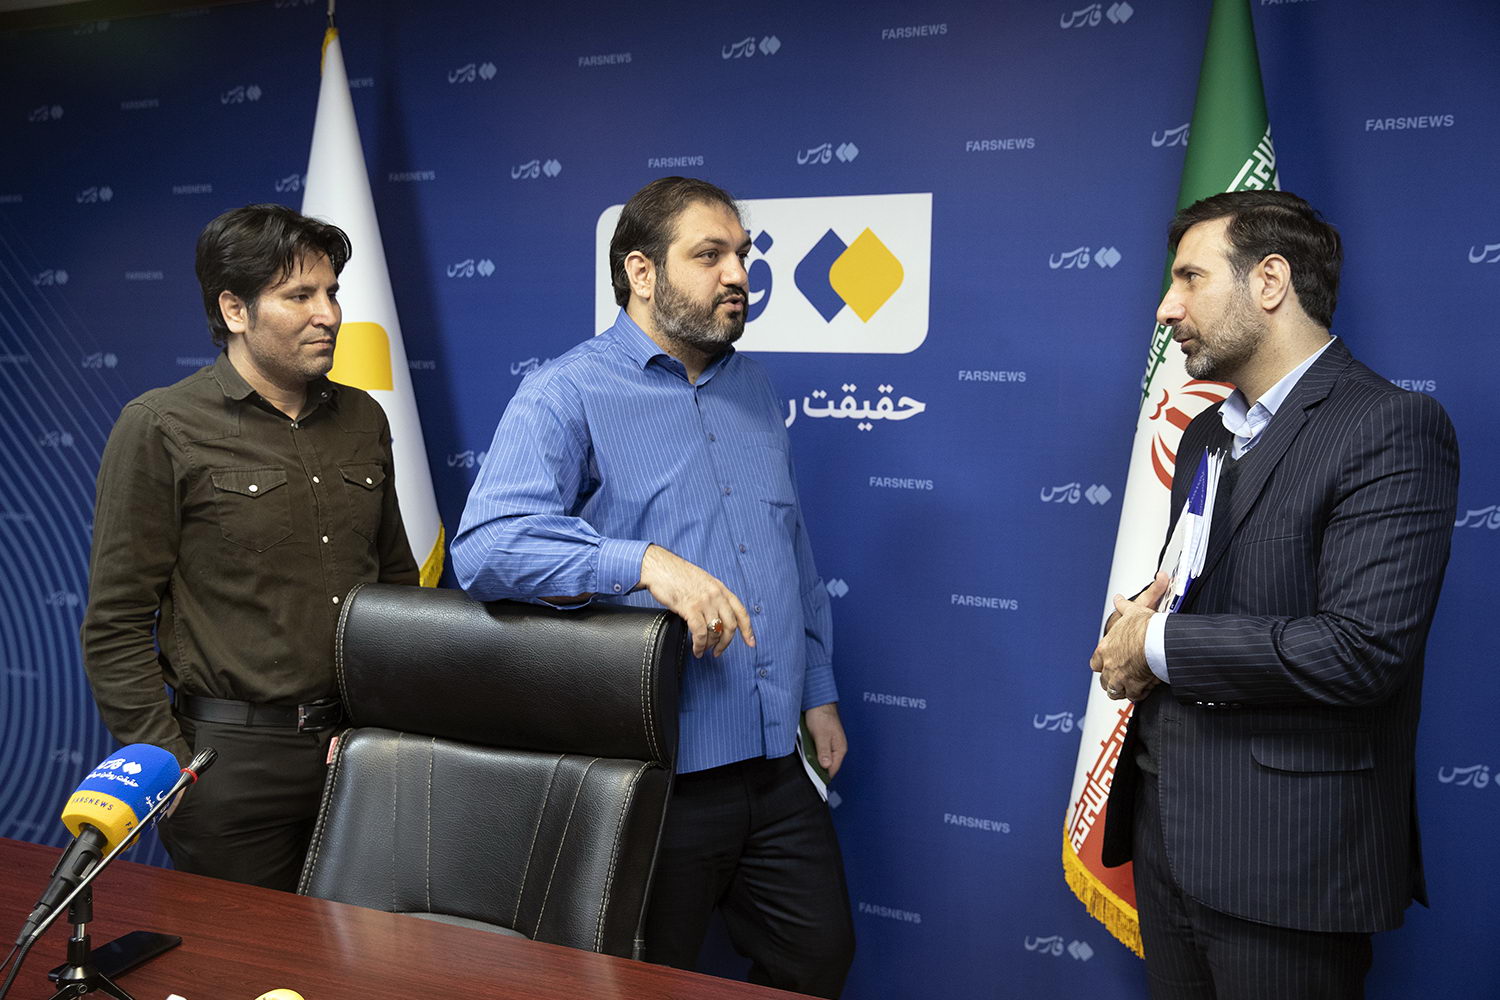 حضور سخنگوی شورای نگهبان در خبرگزاری فارس و گفتگو با خبرنگاران